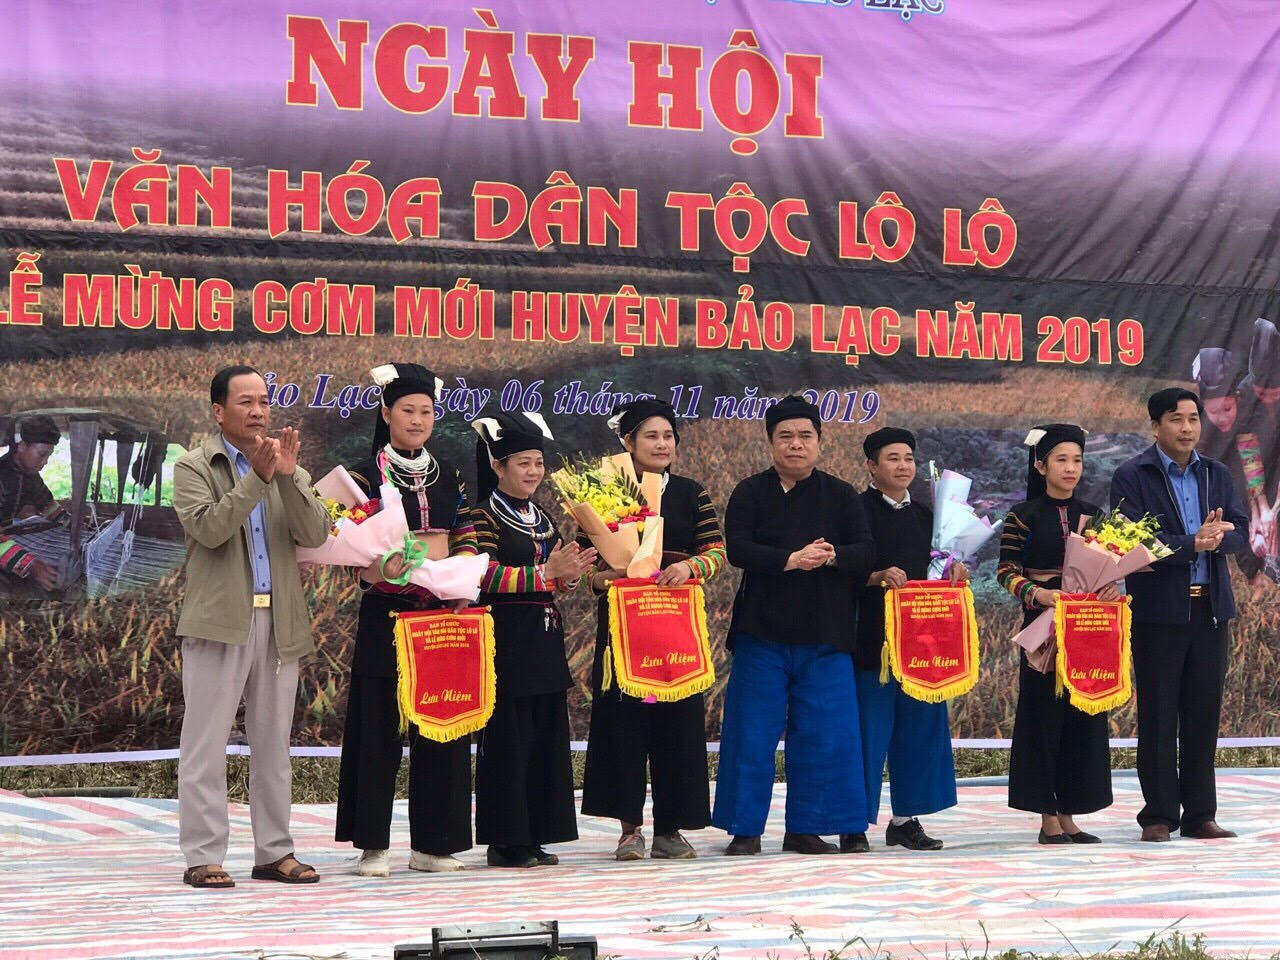 Huyện Bảo Lạc khôi phục ngày hội văn hoá dân tộc Lô Lô nhằm thúc đẩy hoạt động quảng bá và phát triển du lịch